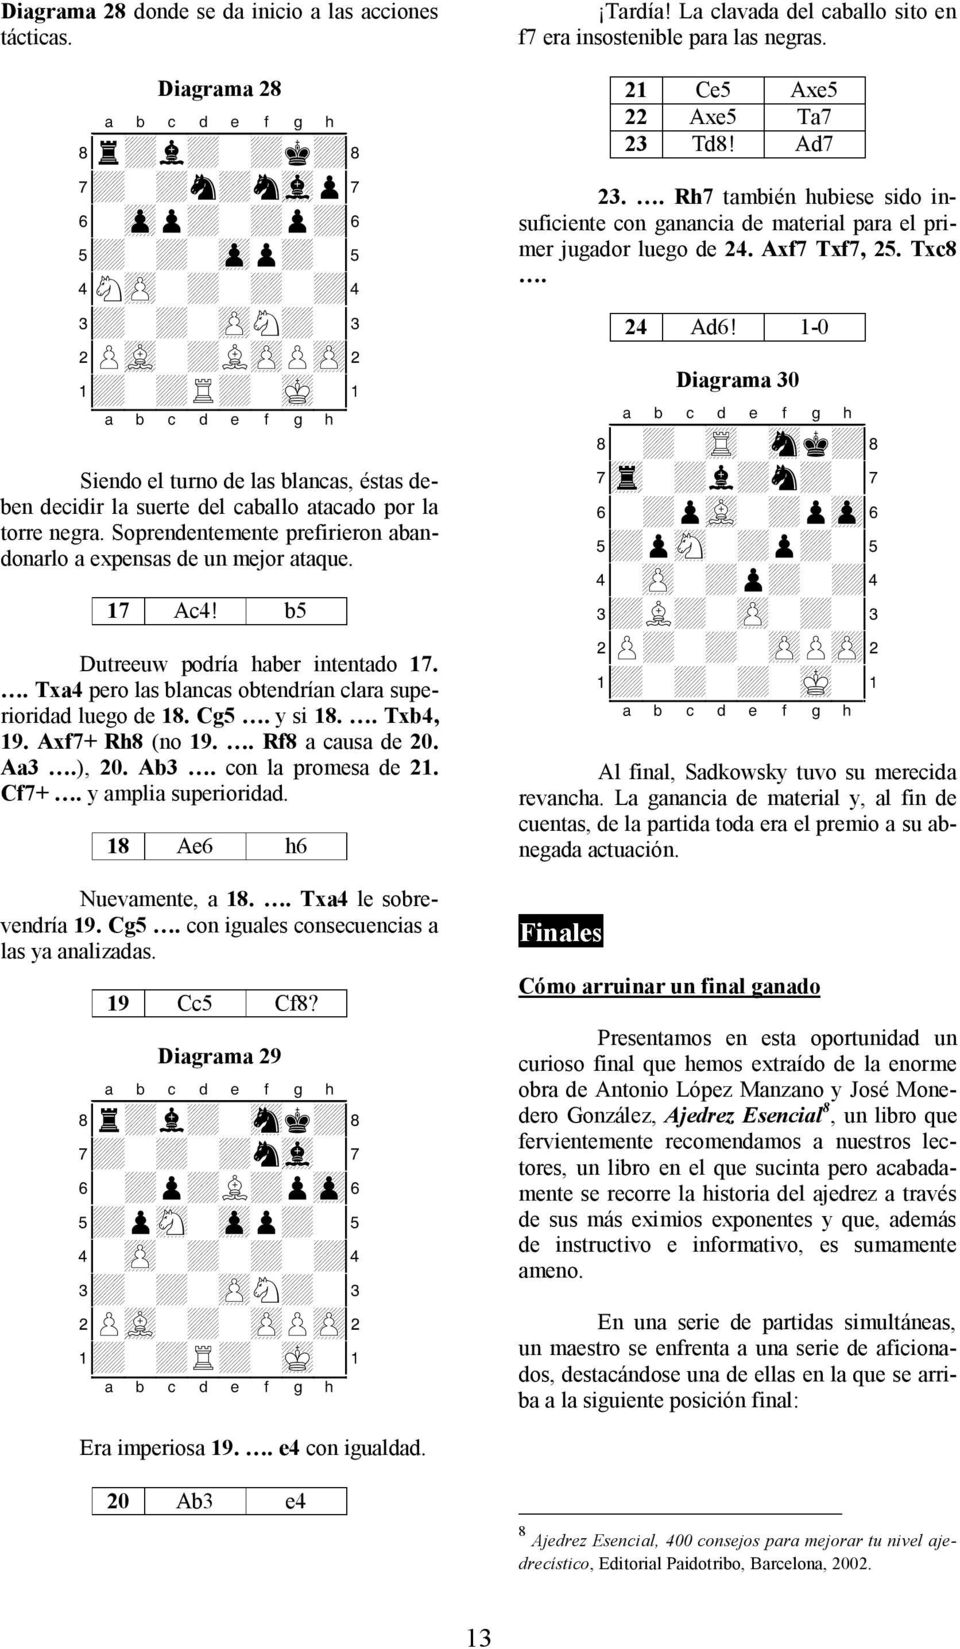 b5 Dutreeuw podría haber intentado 17.. Txa4 pero las blancas obtendrían clara superioridad luego de 18. Cg5. y si 18.. Txb4, 19. Axf7+ Rh8 (no 19.. Rf8 a causa de 20. Aa3.), 20. Ab3.